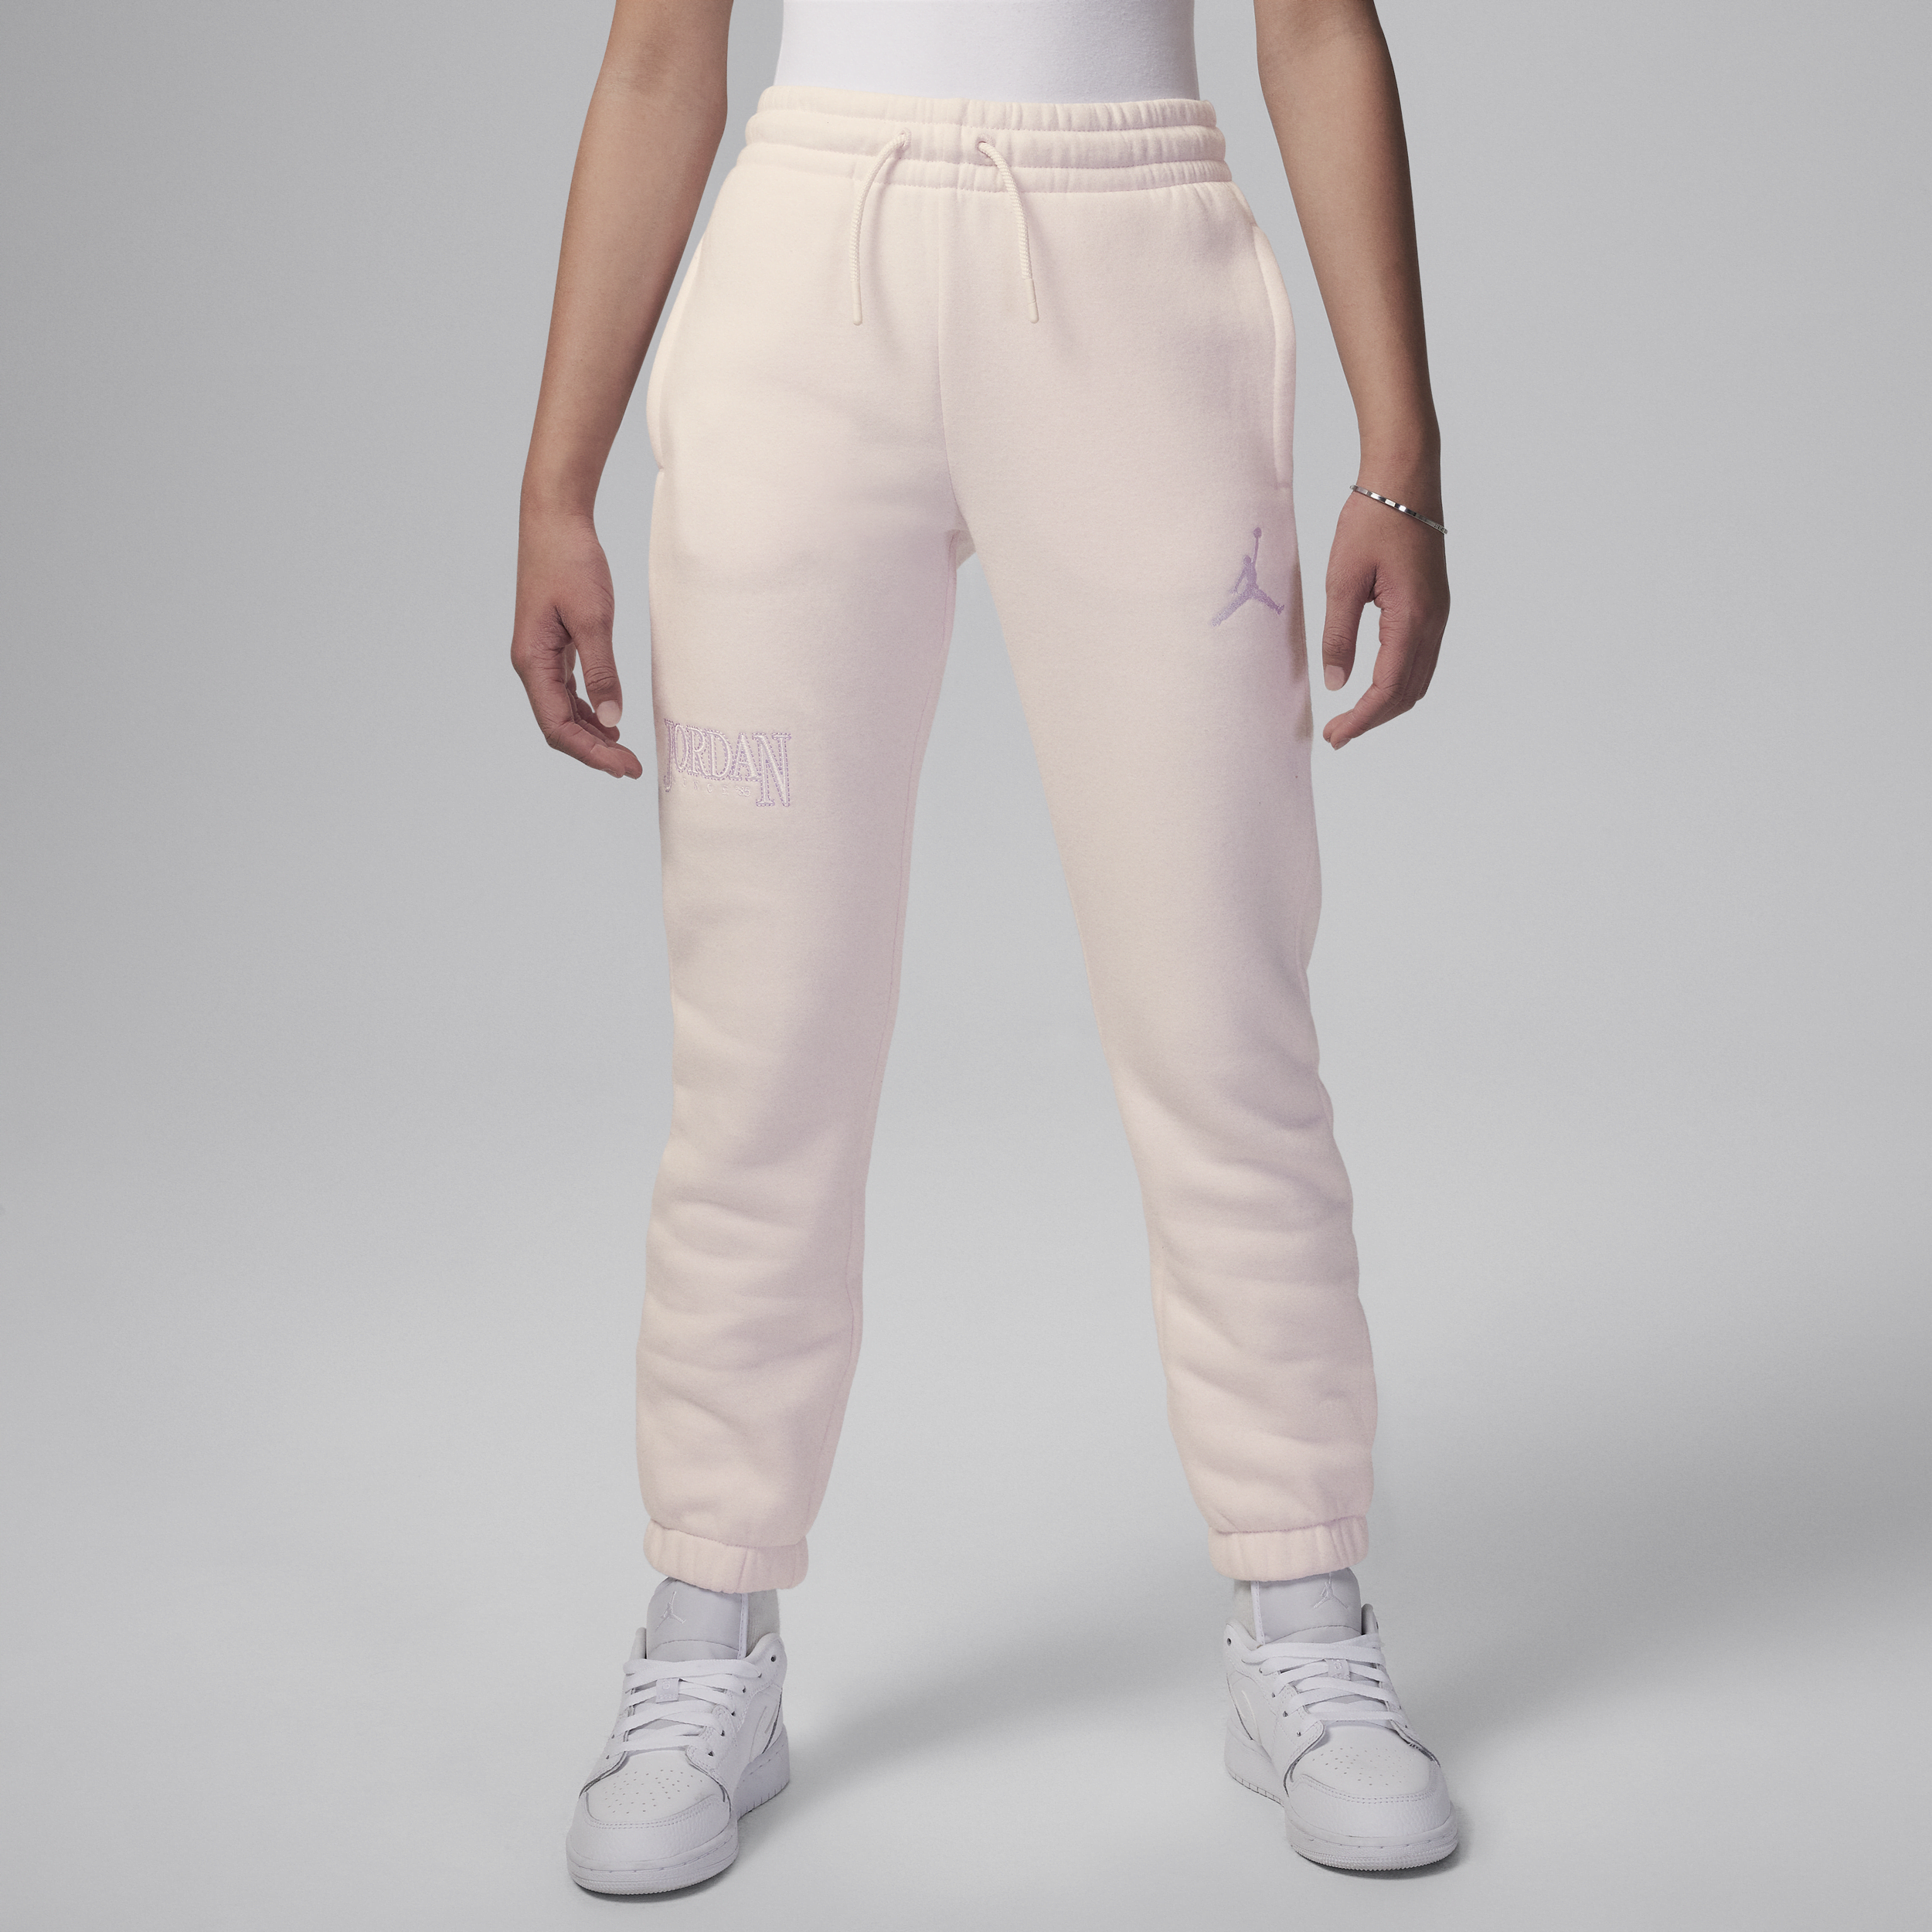 Nike Pantaloni Jordan Fundamentals – Ragazzo/a - Rosa